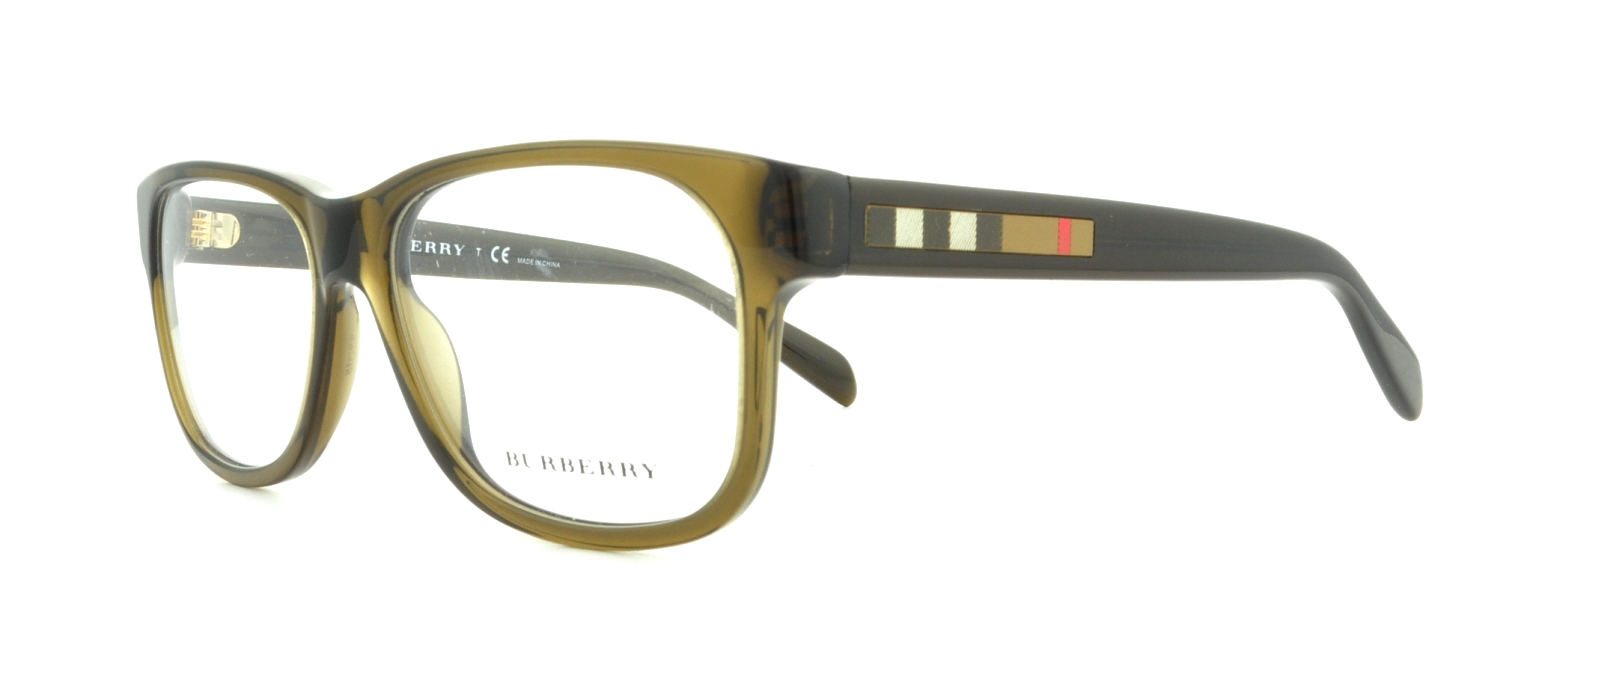 Designer Frames Outlet. Tory Burch Eyeglasses TY2060